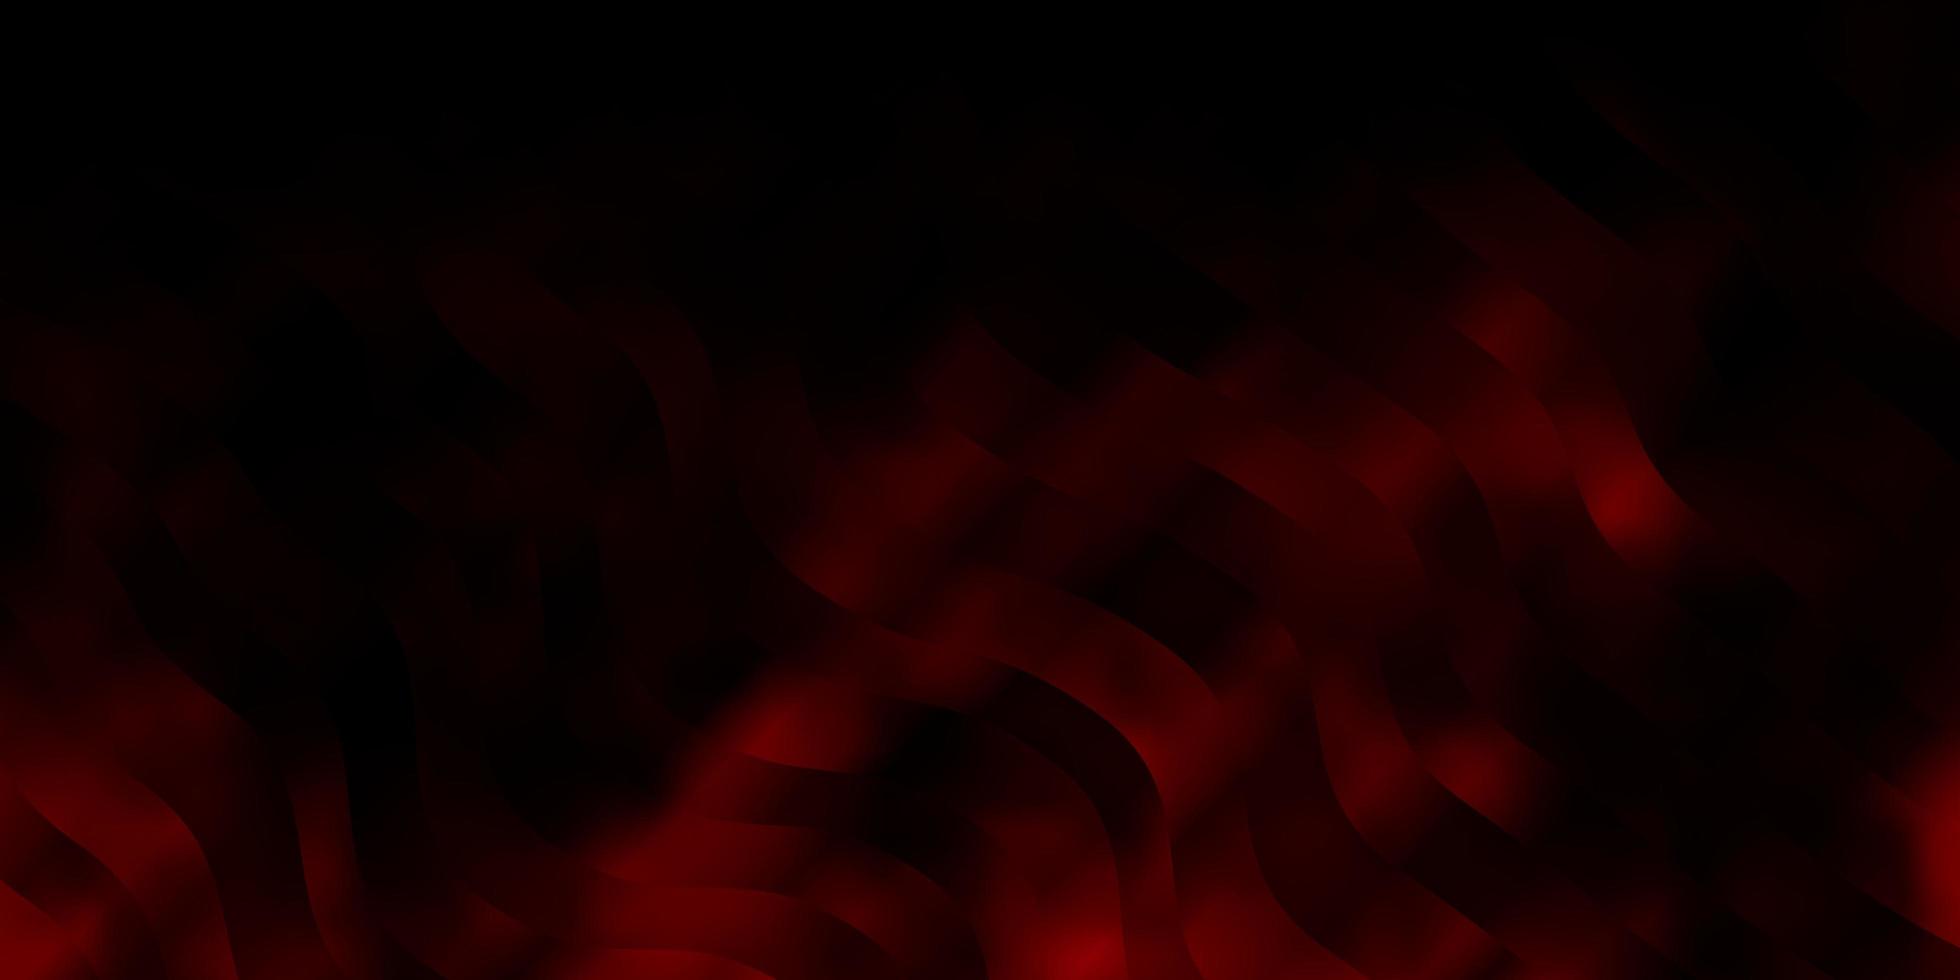 Diseño vectorial rojo oscuro con arco circular. vector